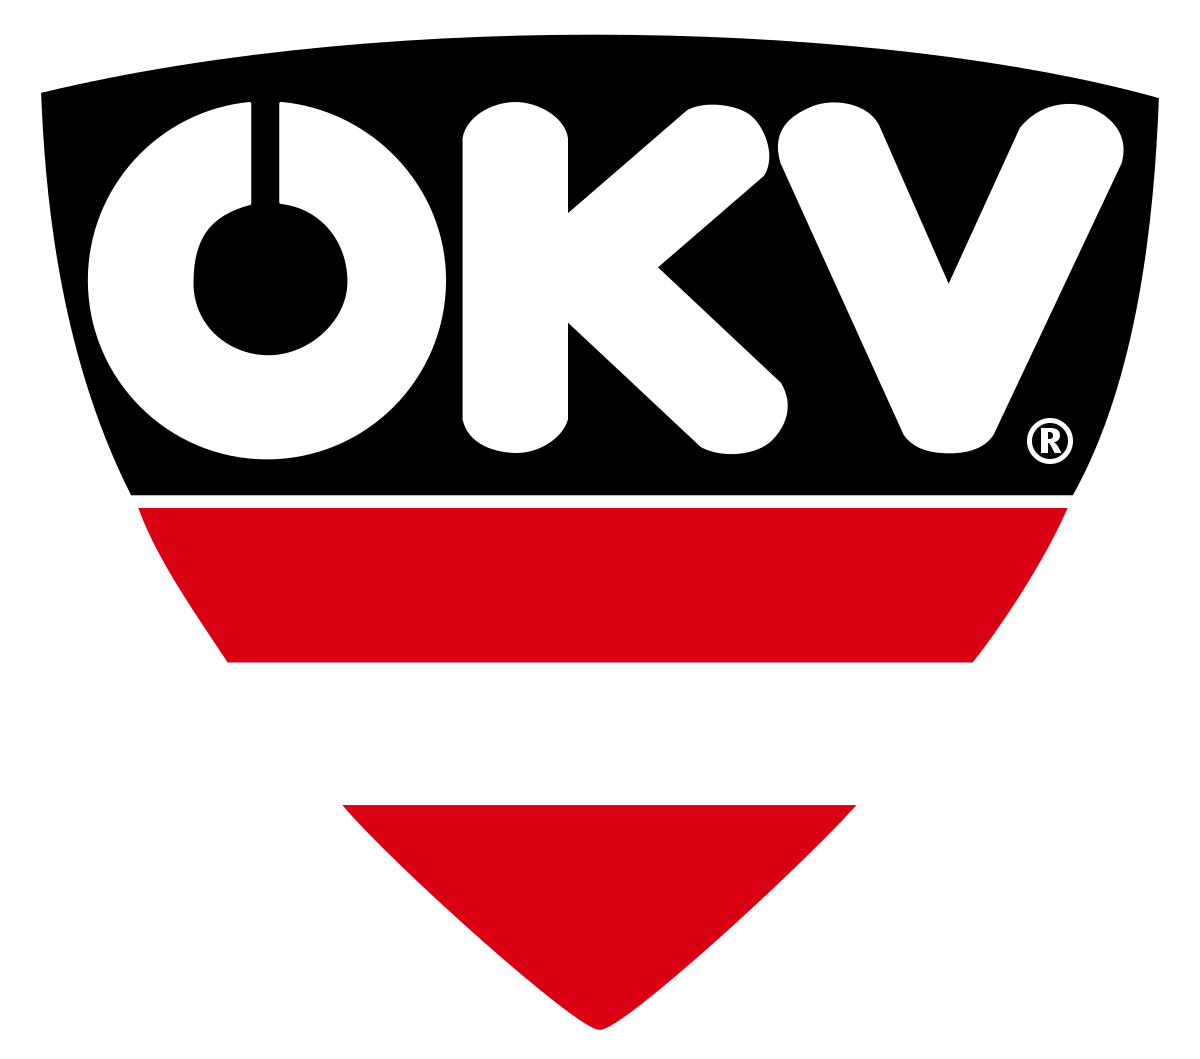 ÖKV Logo